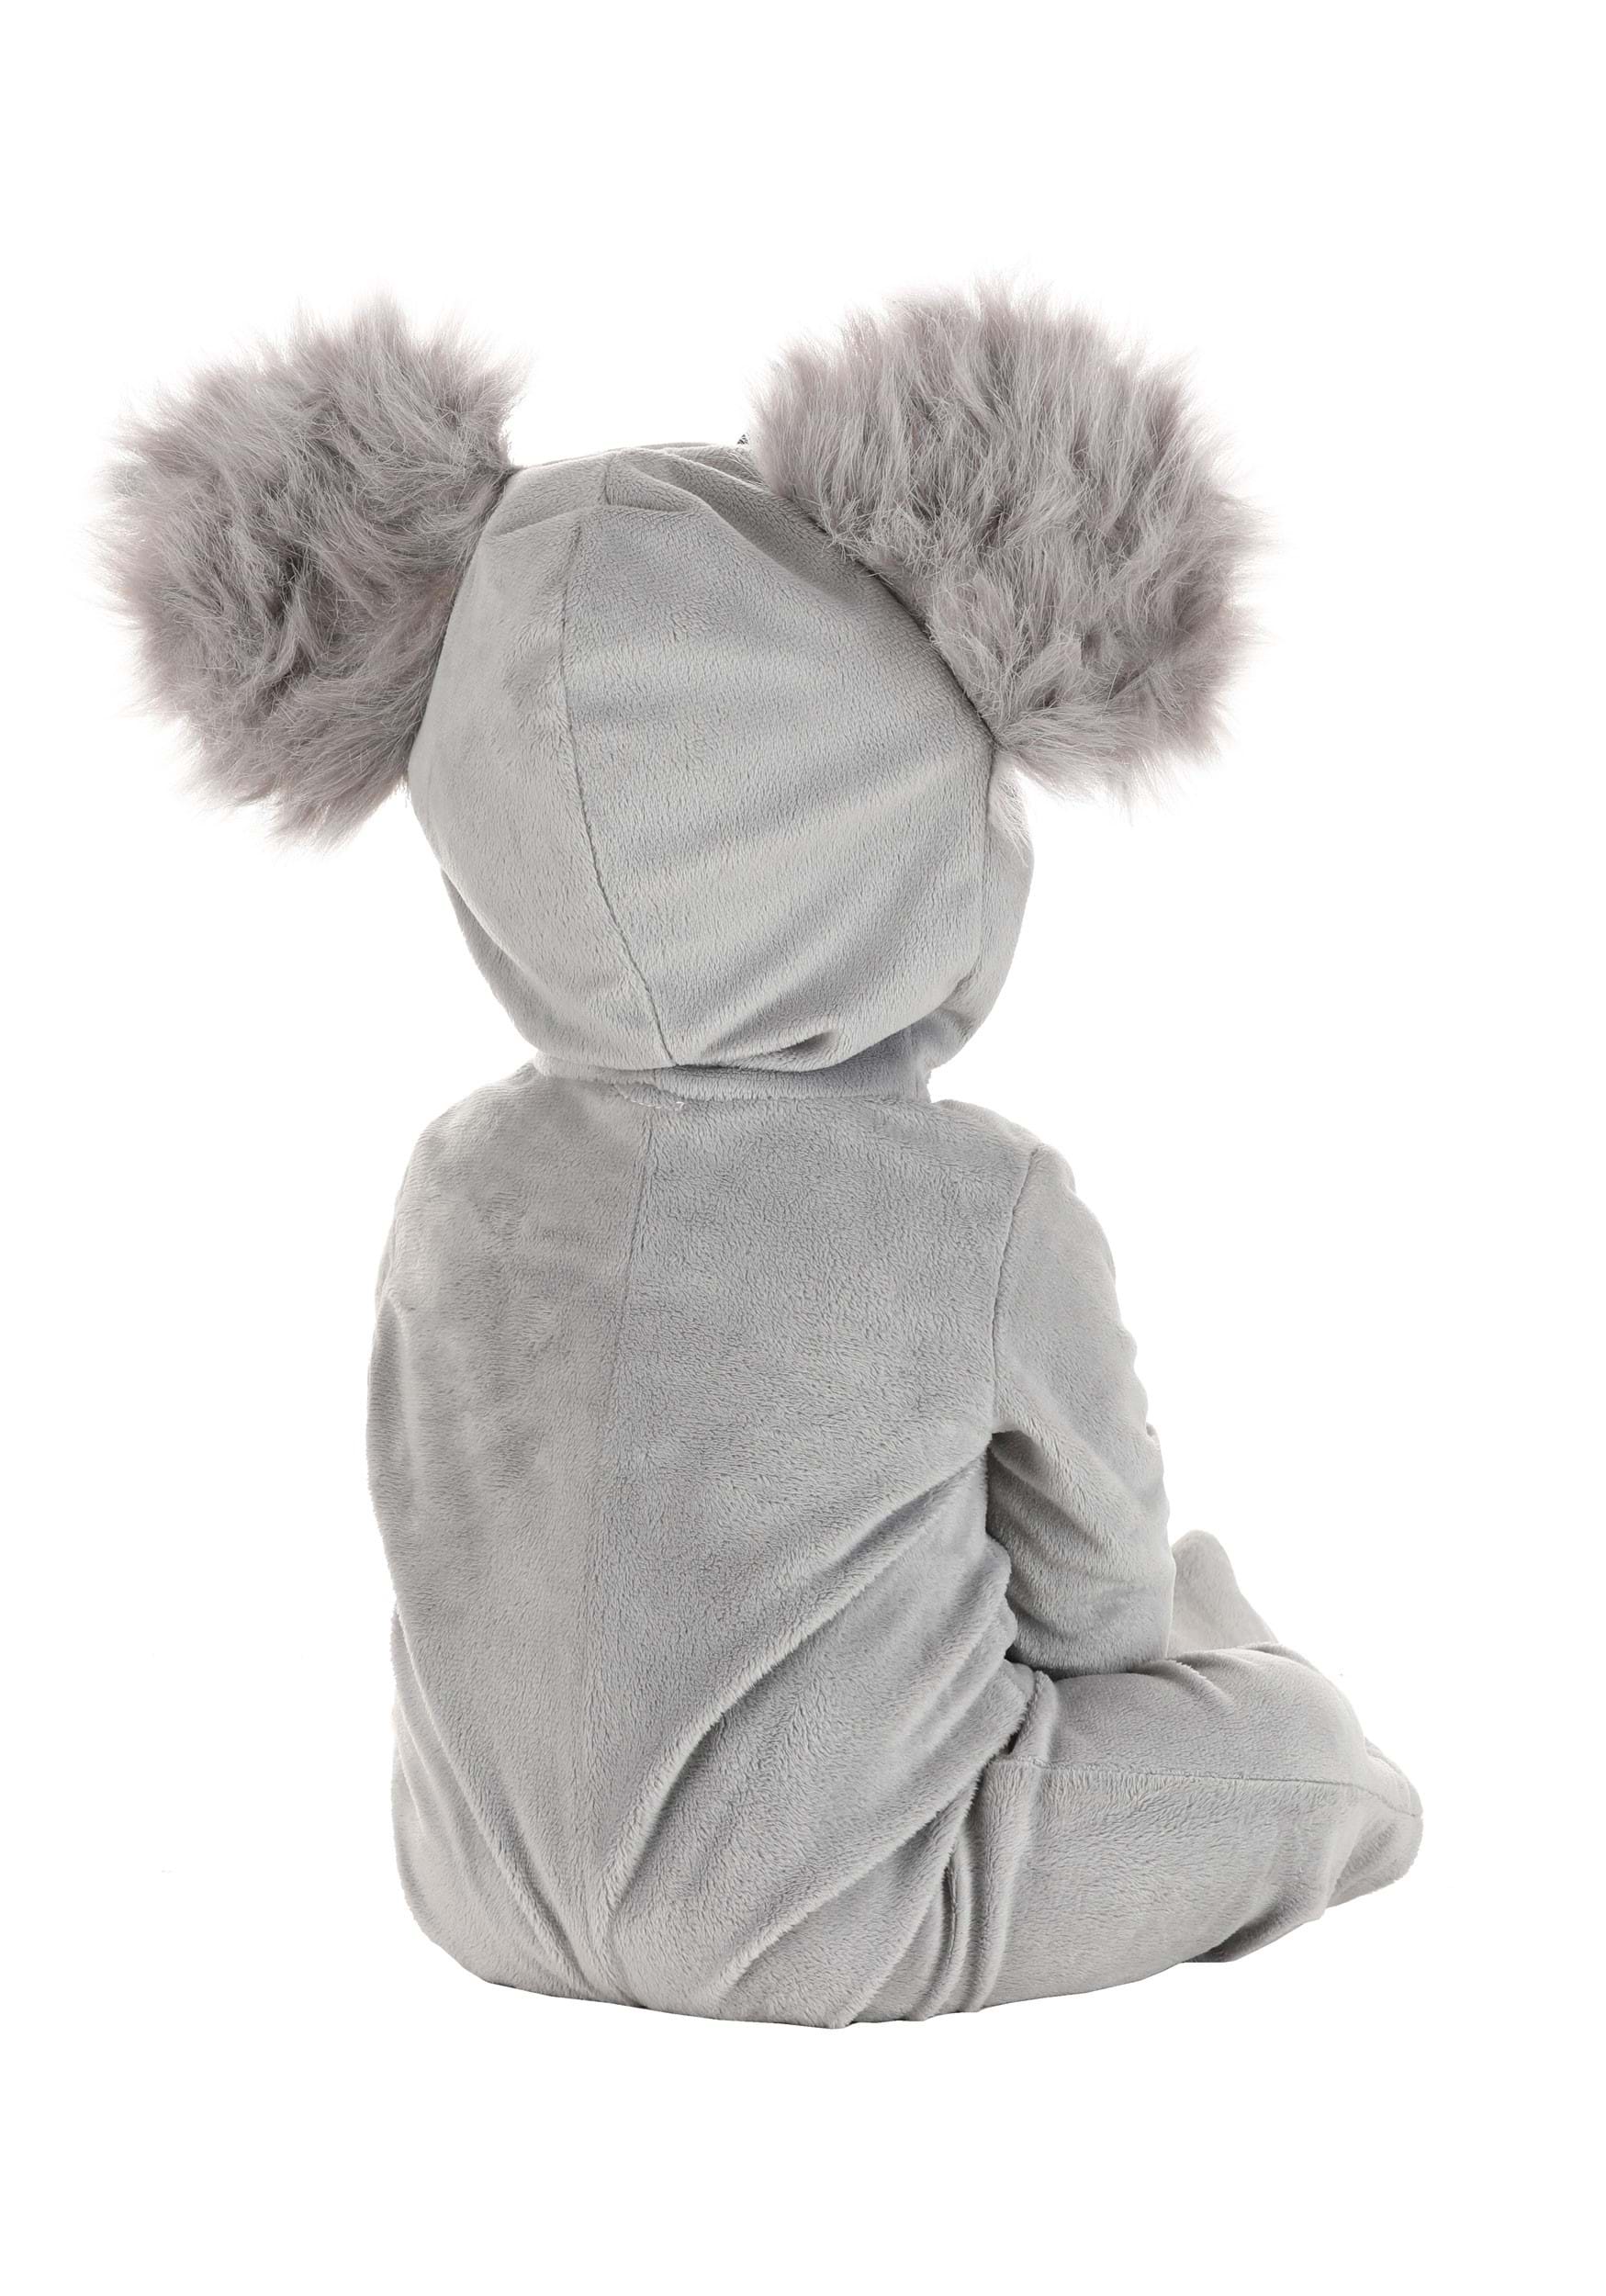 Cuddly Koala Costume For Infants